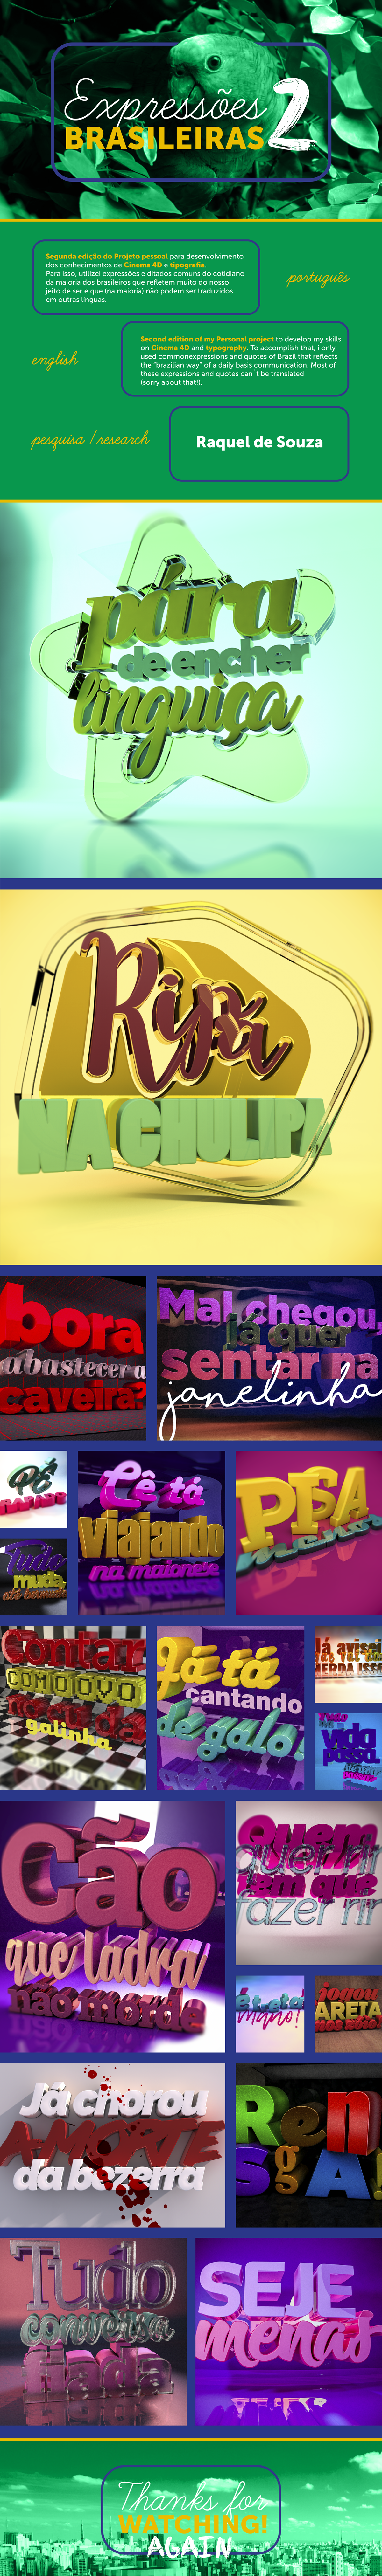 expressões brasileiras ditados populares Brazil typography   3D Render cinema 4d